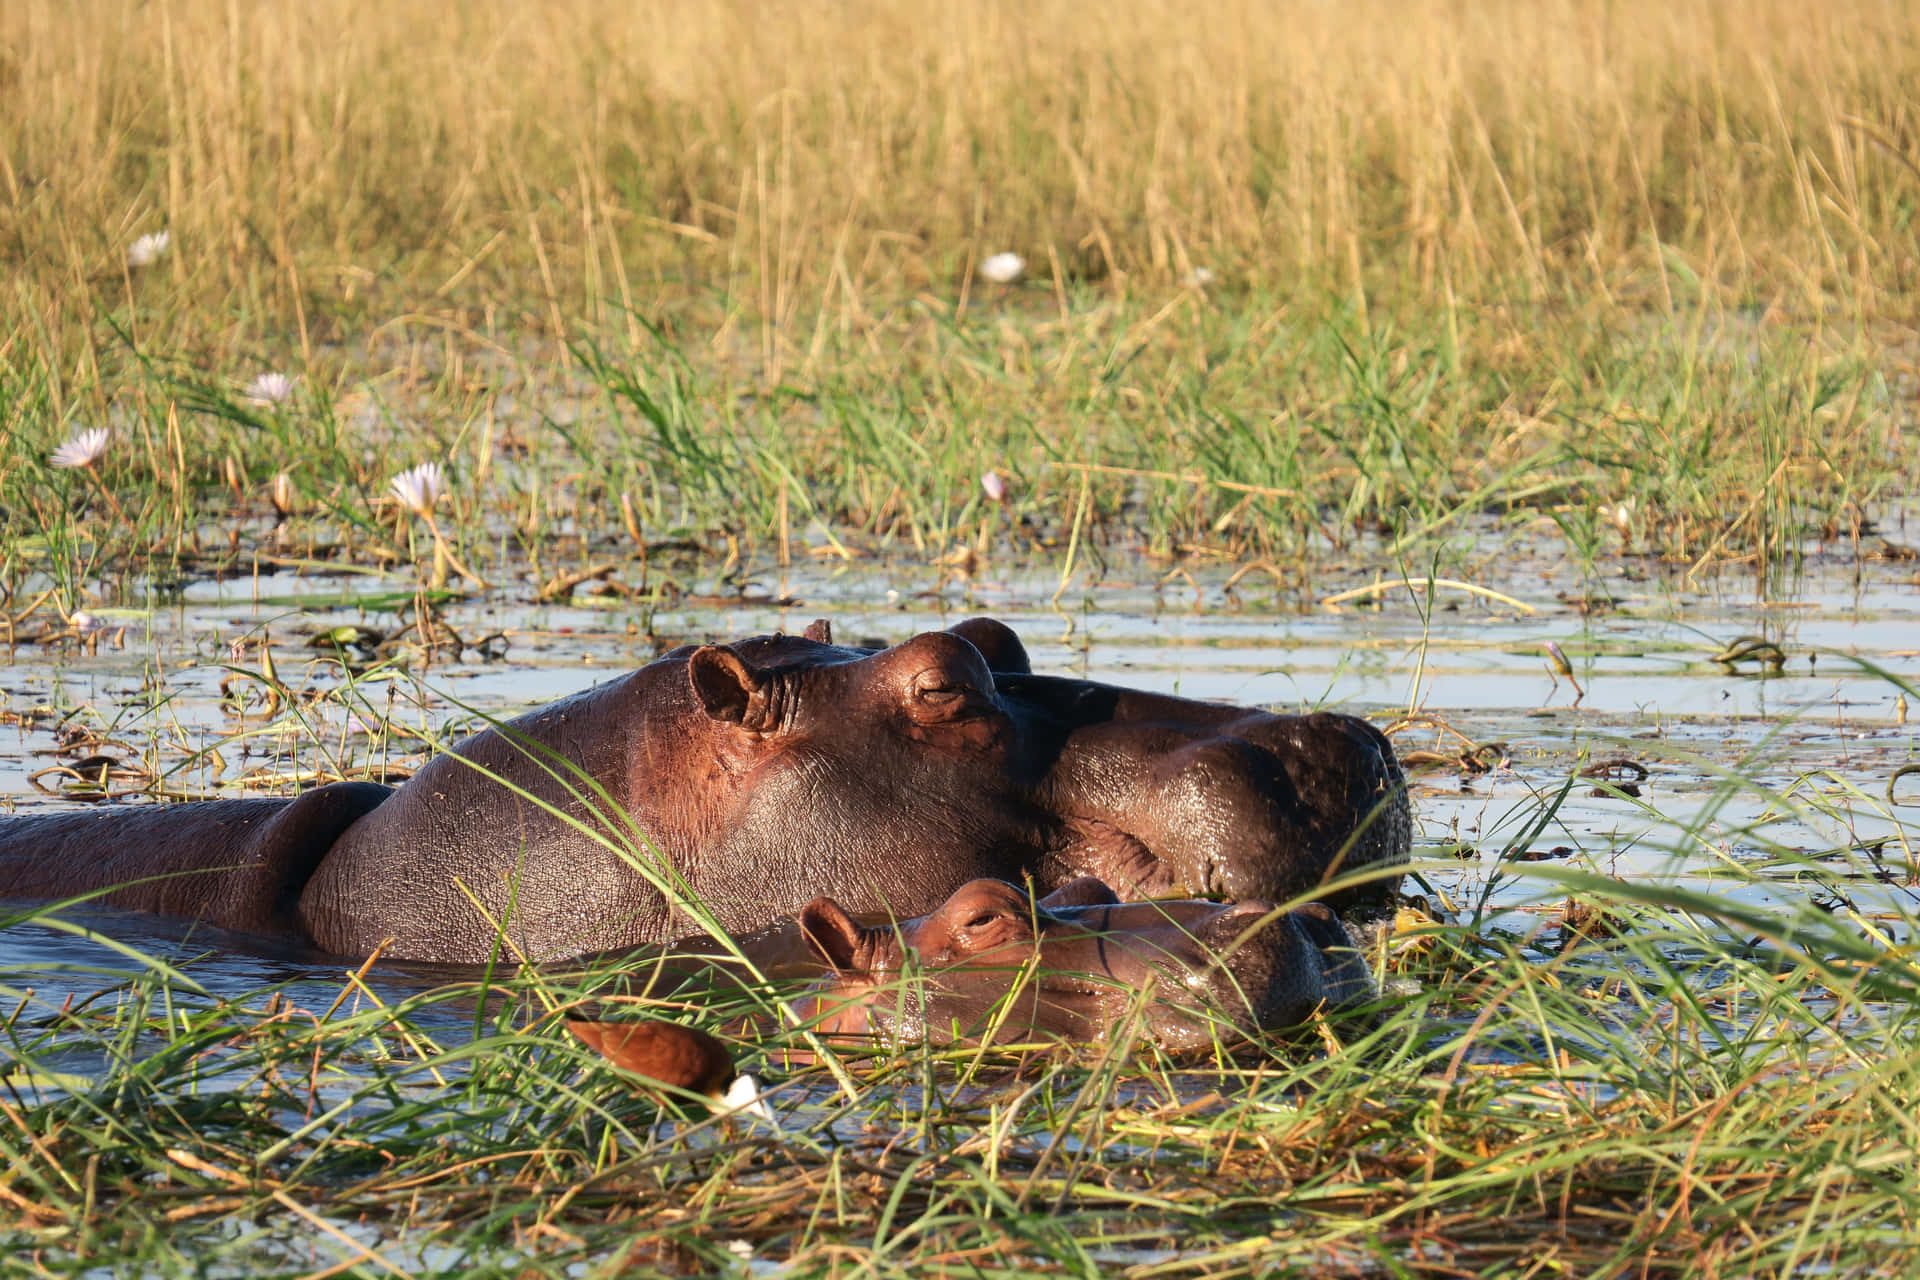 Imagende Un Hipopótamo En La Hierba Cerca De Un Río En La Naturaleza.